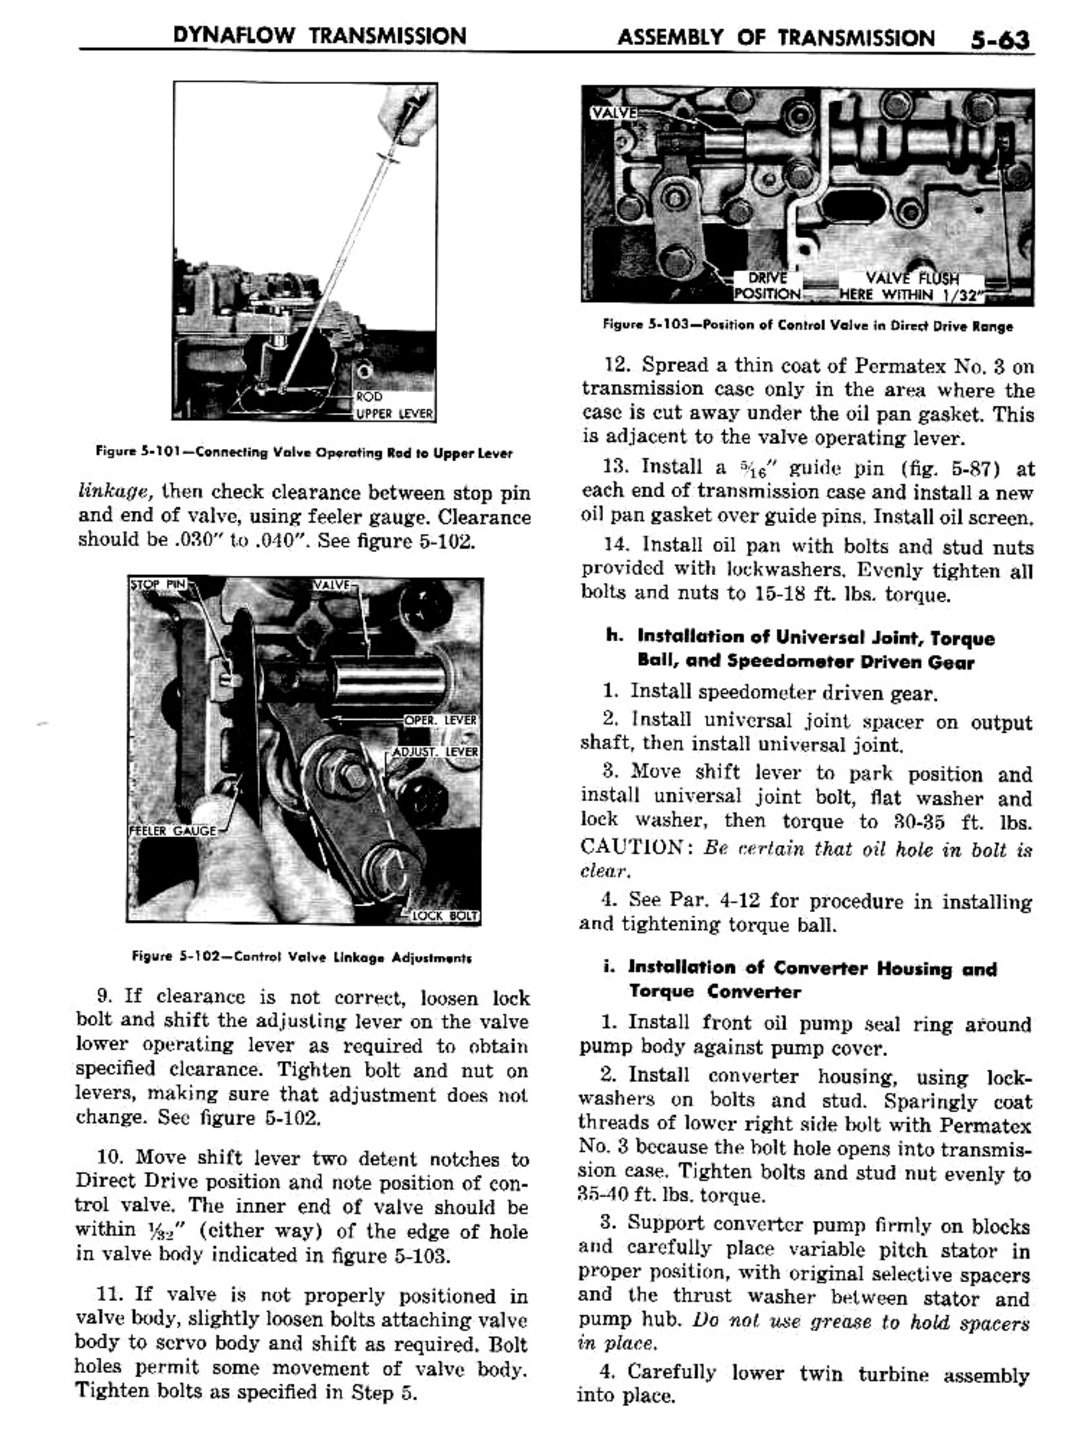 n_06 1957 Buick Shop Manual - Dynaflow-063-063.jpg